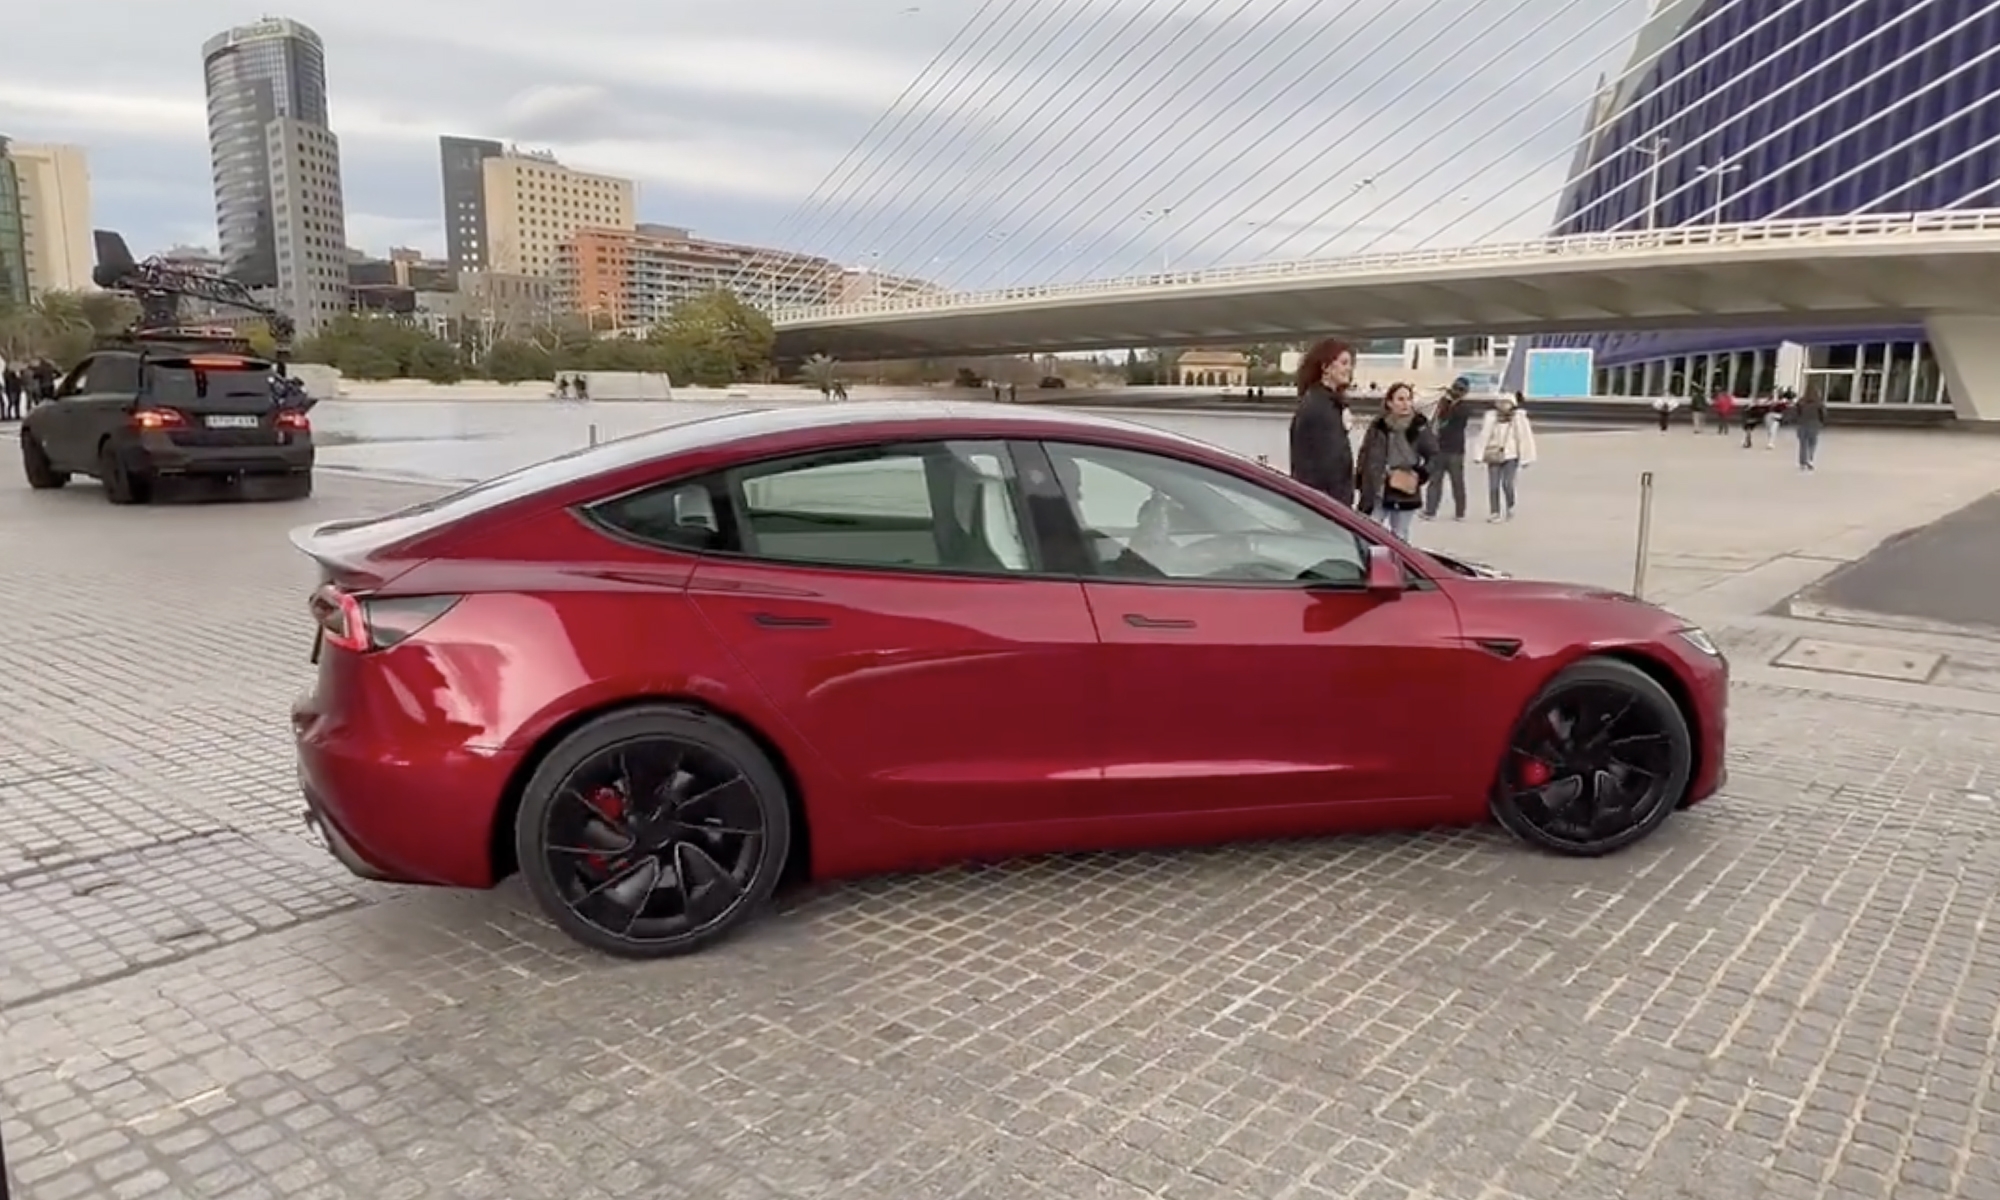 El Tesla Model 3 se pasea por Valencia en su particular jornada de fotos.